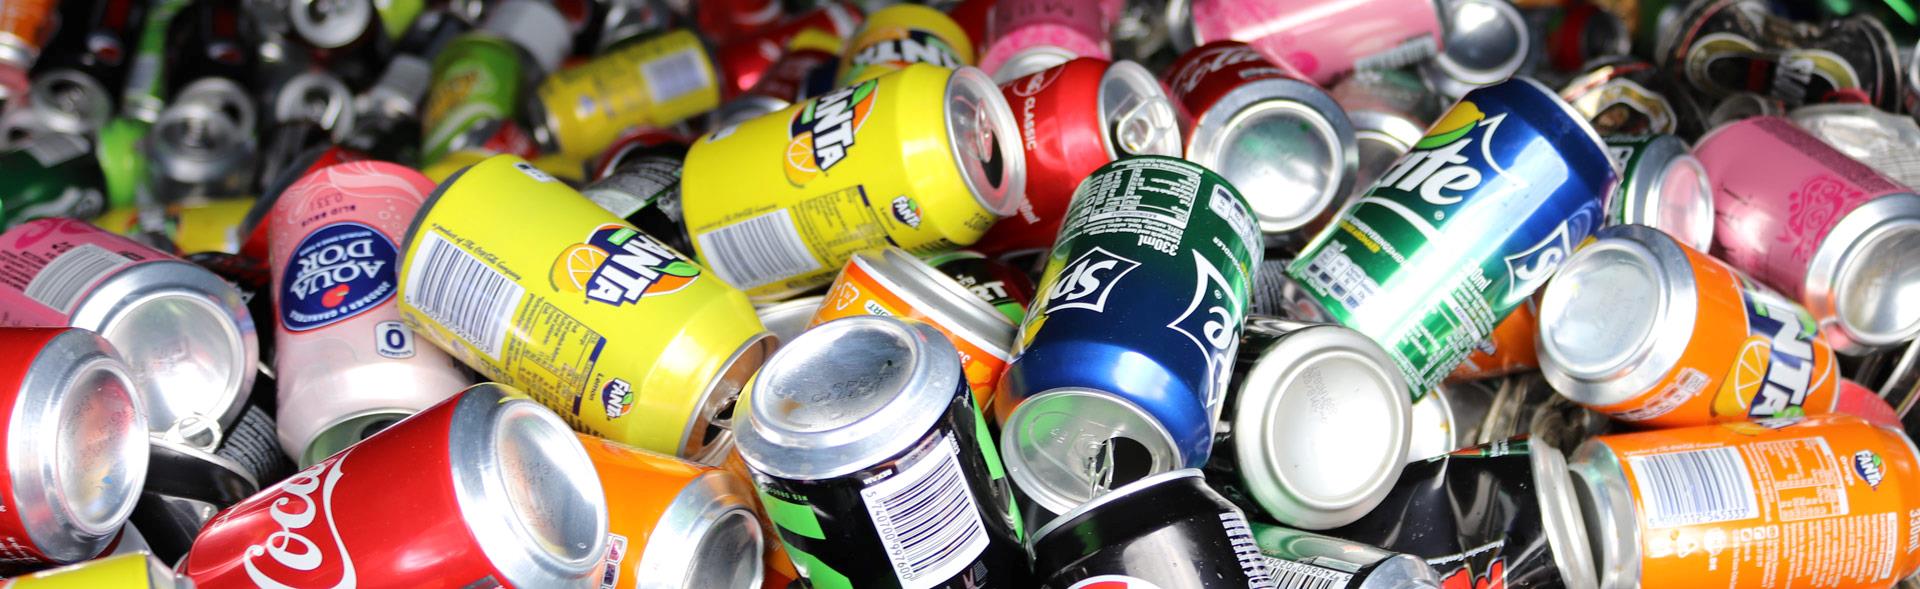 Forskellige øl- og sodavandsdåser til genbrug